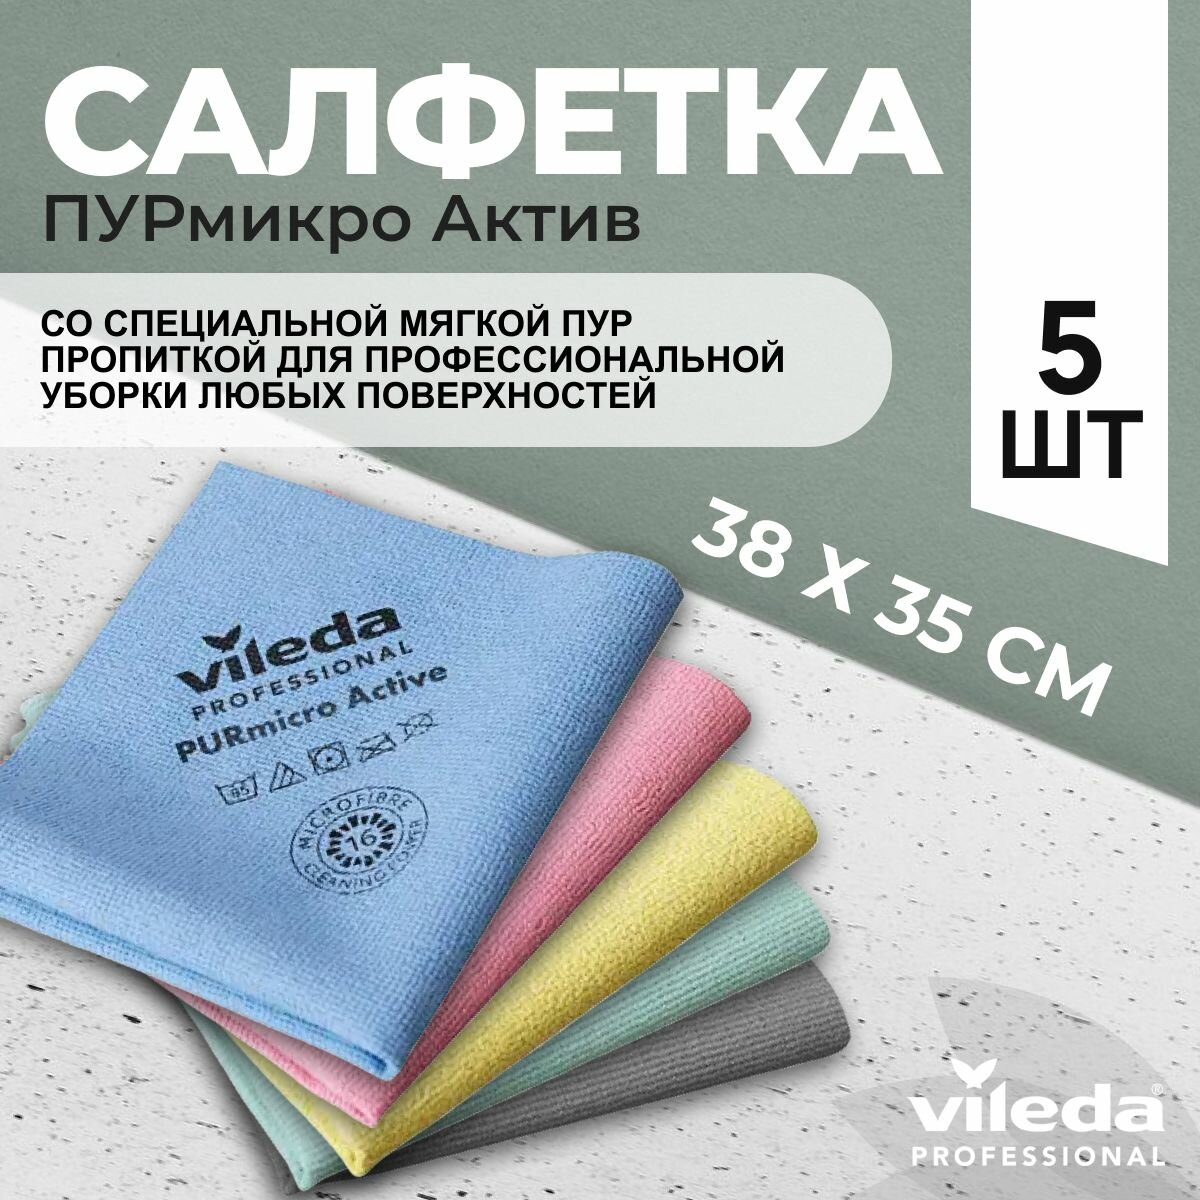 Салфетки профессиональные для уборки из микроволокна Vileda ПУРмикро Актив PURmicro Active 38х35 см цветные 5 шт.